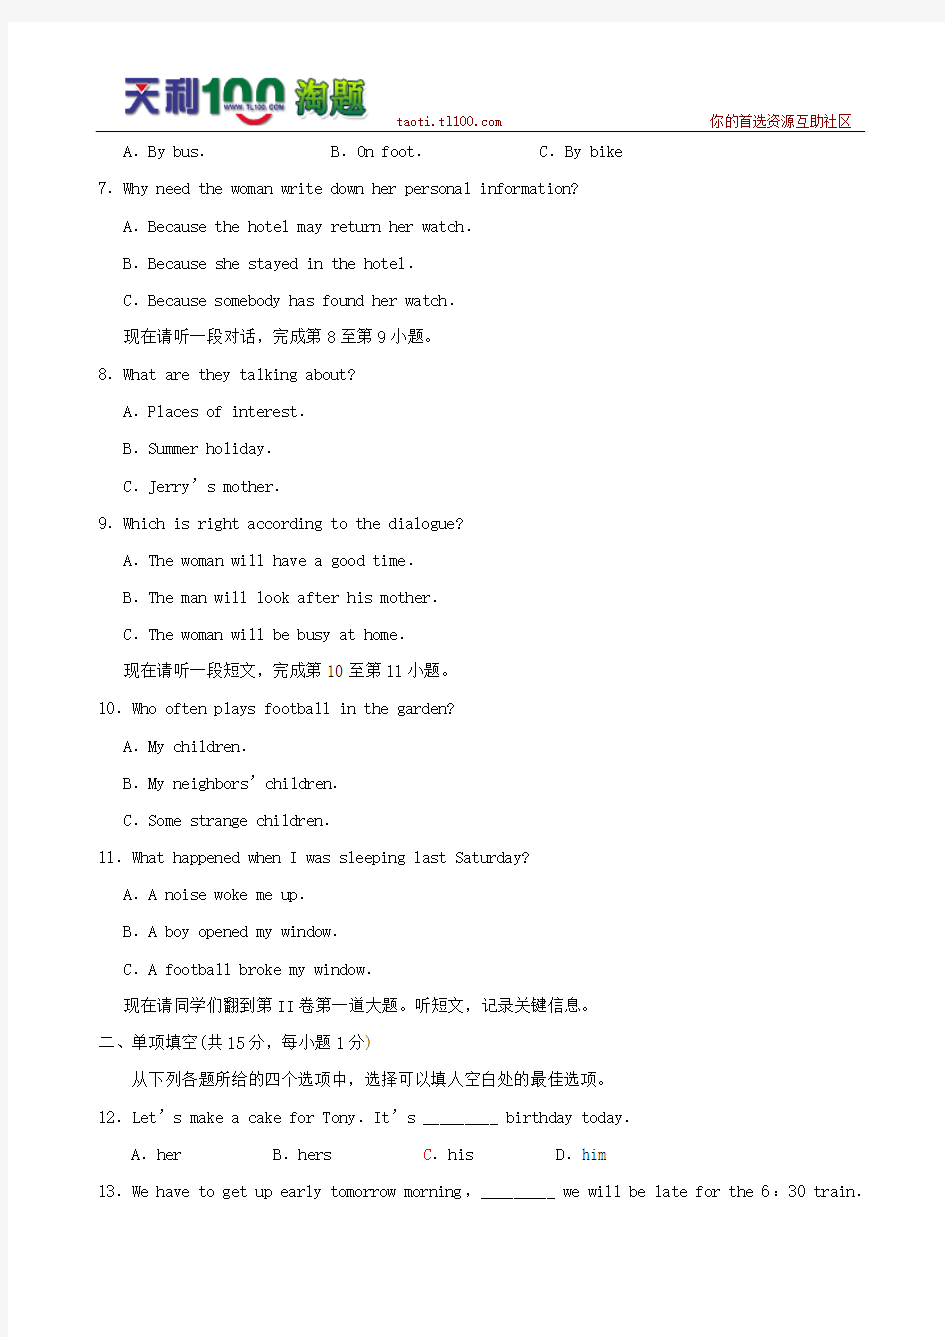 北京市西城区09-10年初二第二学期期末考试英语试卷及答案[1]